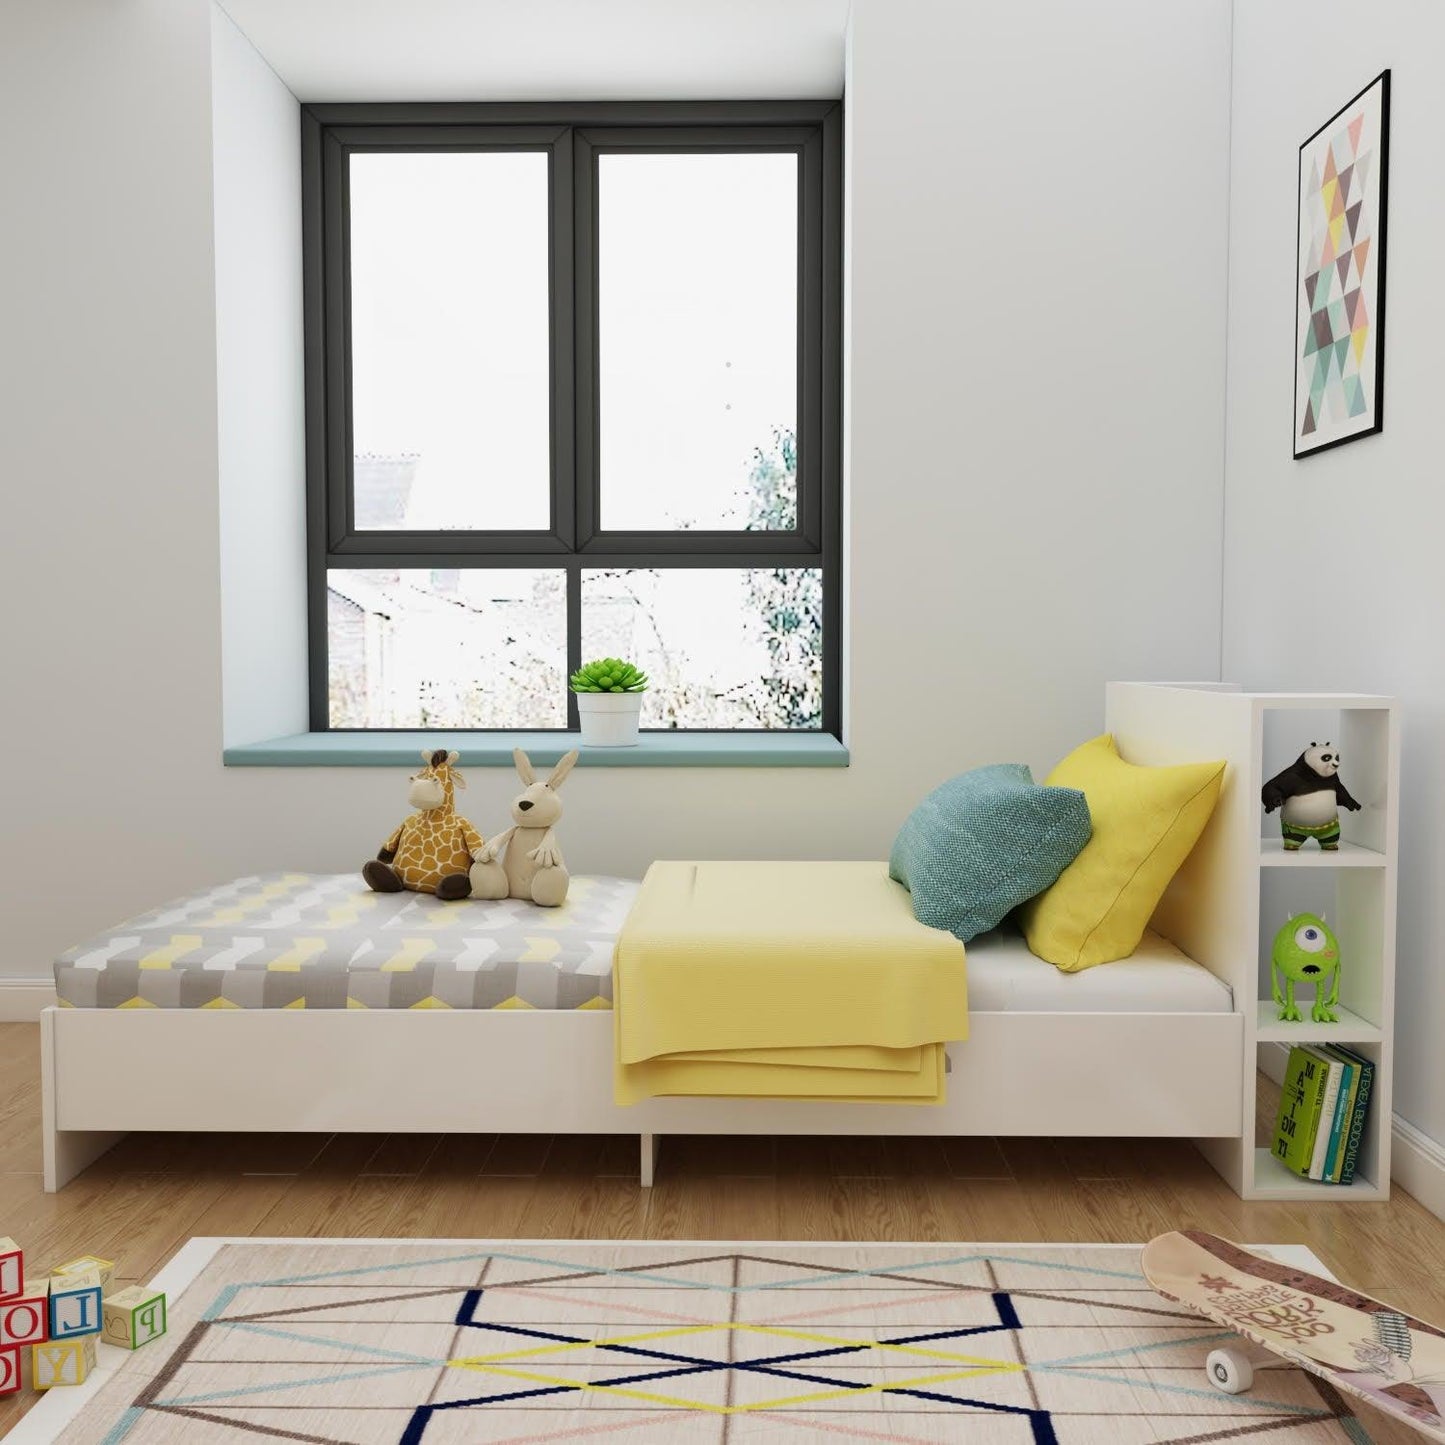 Acropoli Bedstead Bed Frame with Storage Shelves - Destina Home